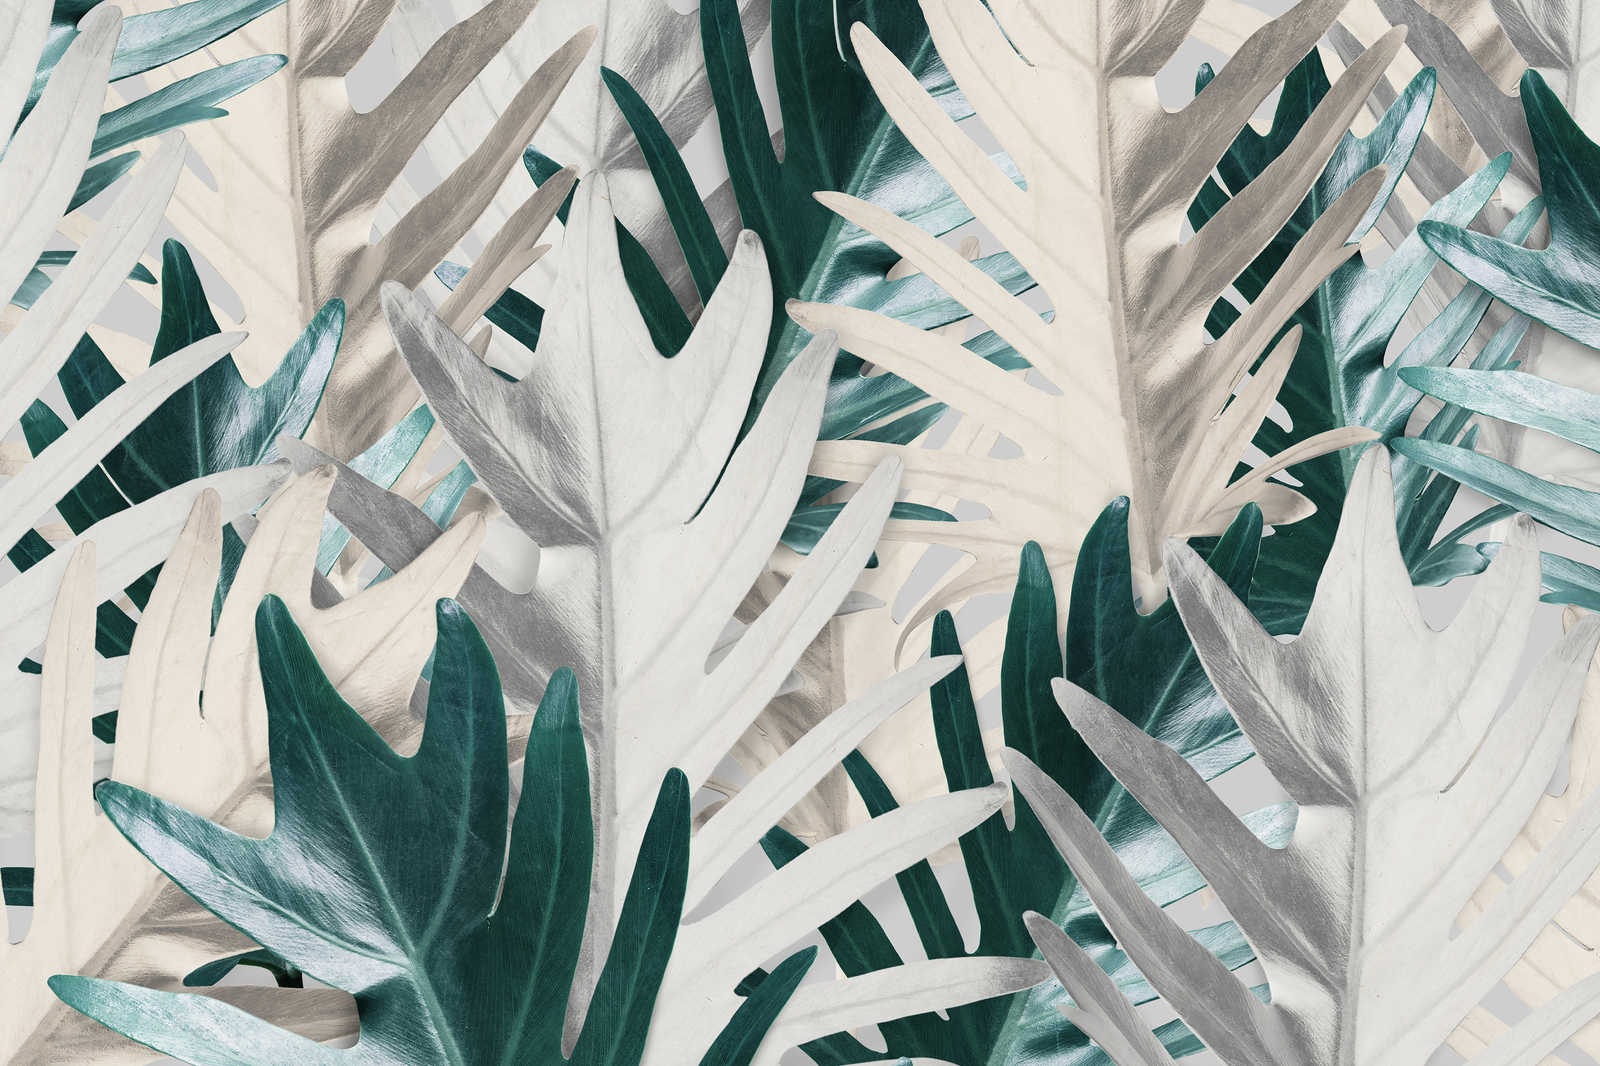             Toile avec feuilles de palmier tropicales - 0,90 m x 0,60 m
        